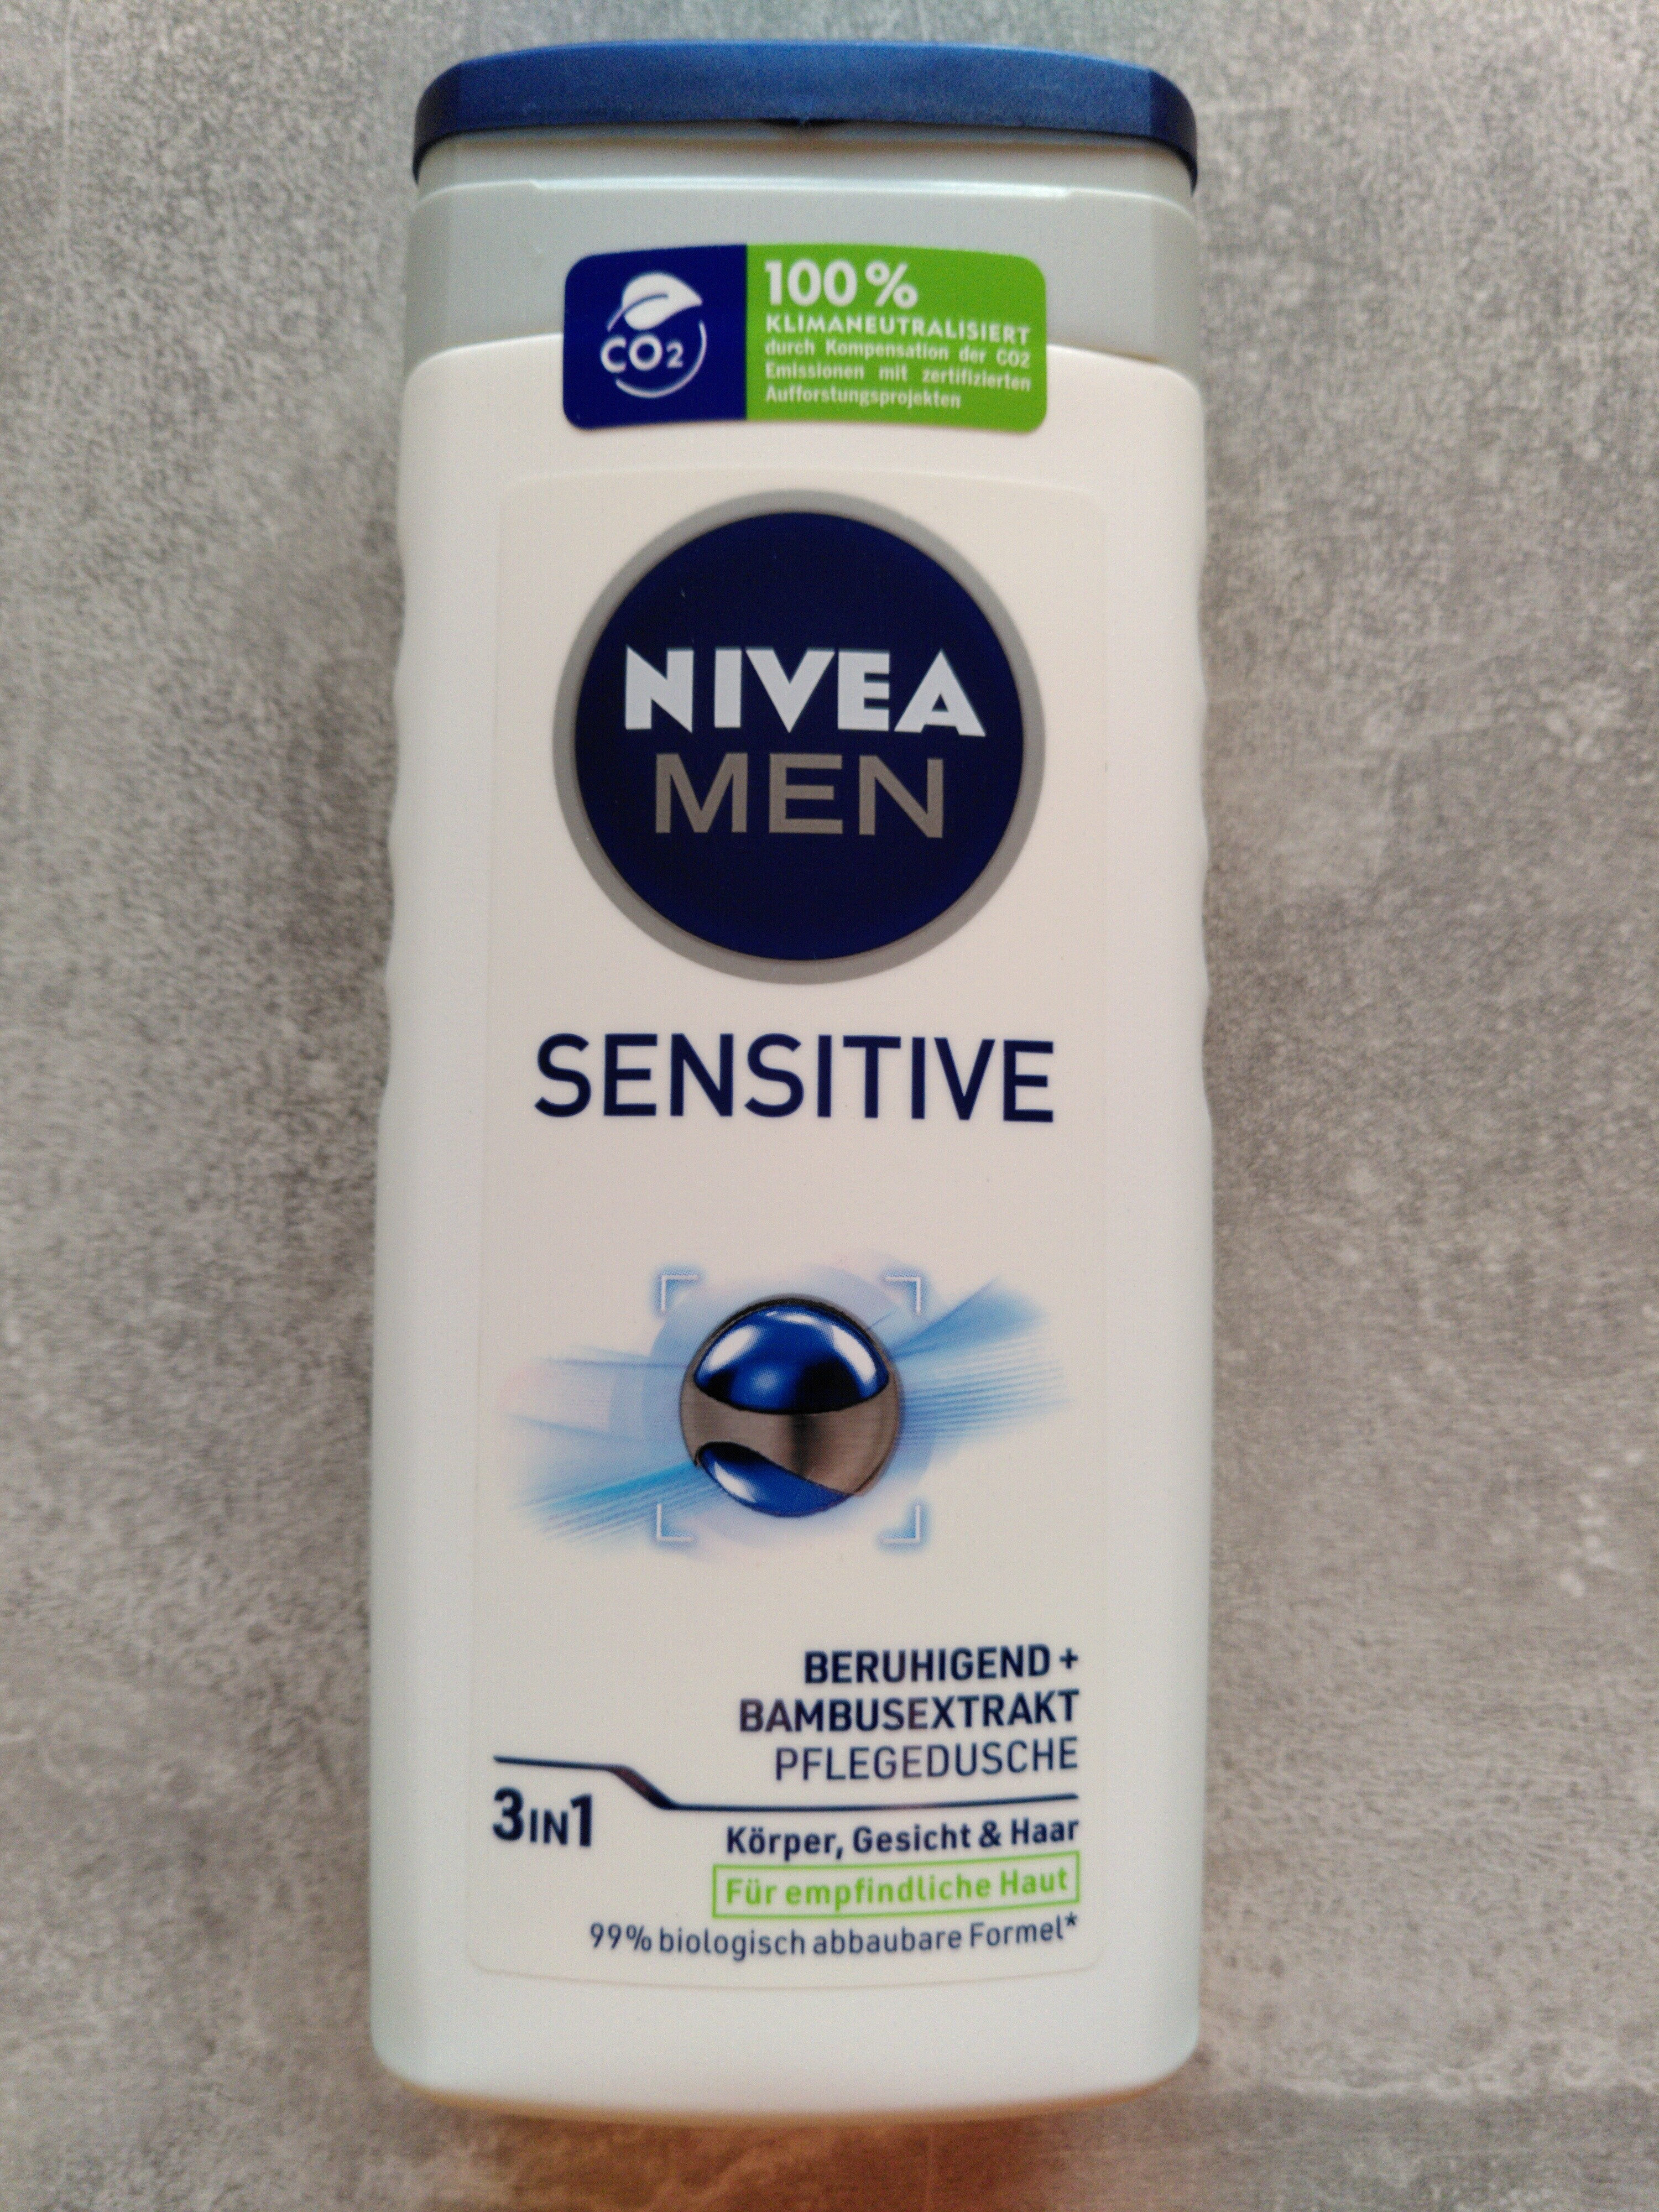 Nivea Men Sensitive - Product - en